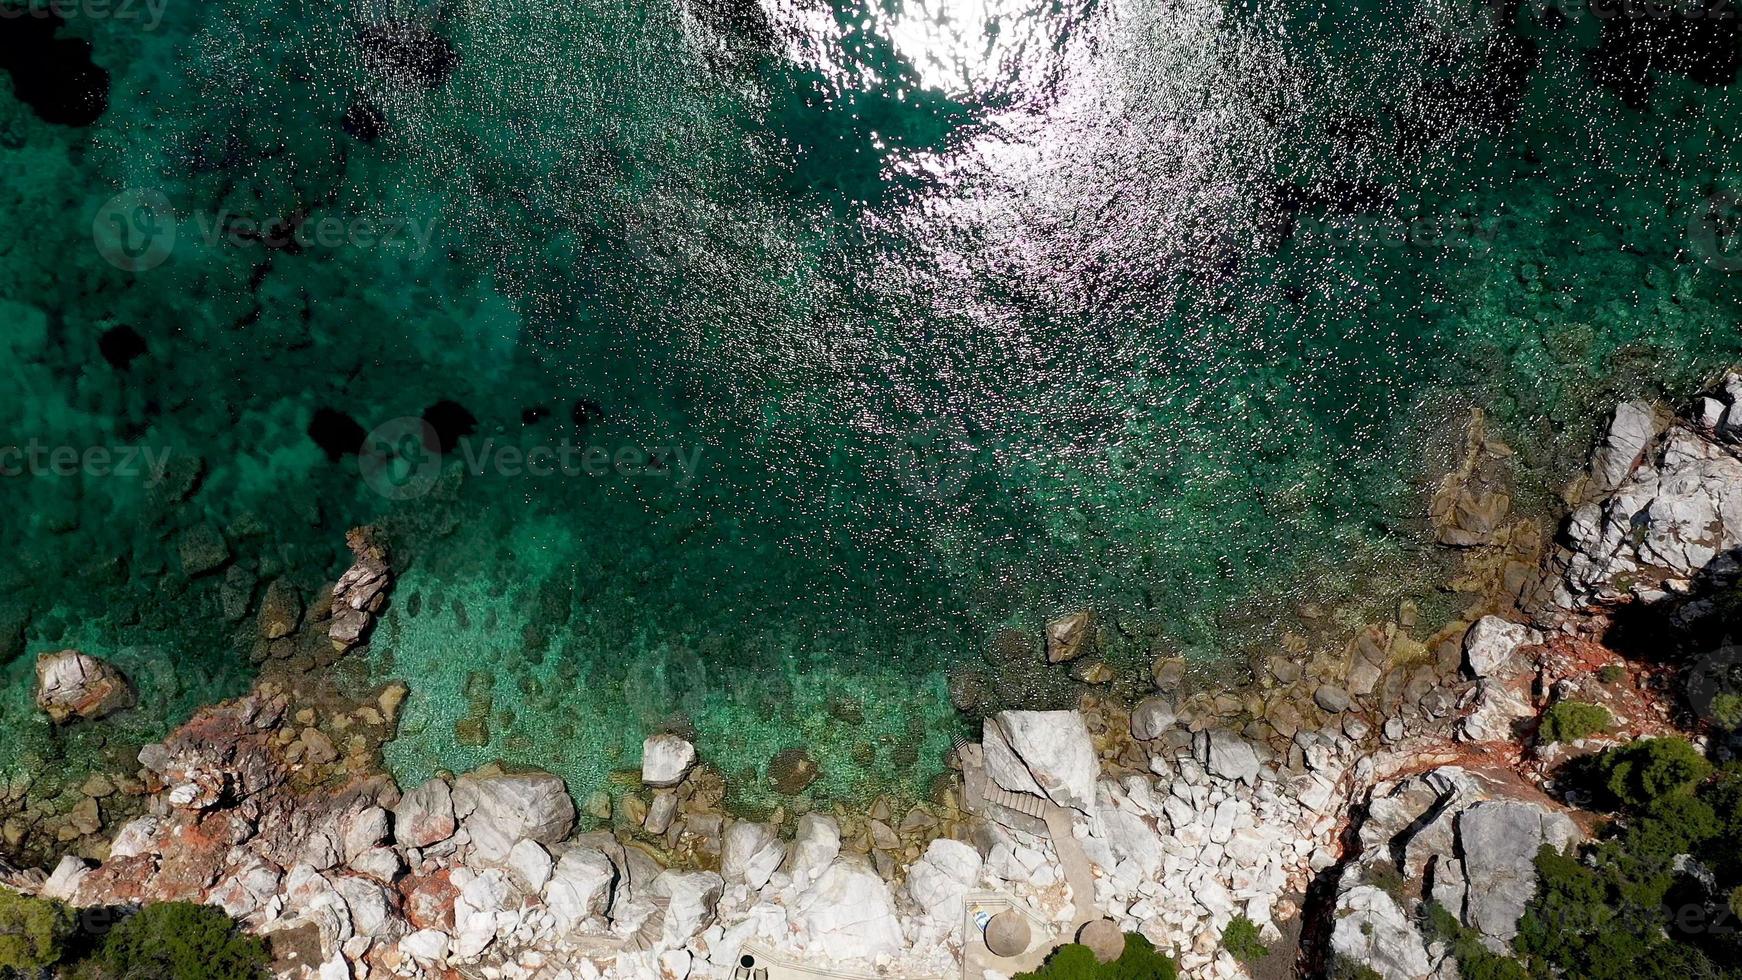 vue aérienne par drone sur une côte rocheuse, des eaux cristallines de la mer Égée, des plages touristiques et beaucoup de verdure sur l'île de skopelos, en grèce. une vue typique de nombreuses îles grecques similaires. photo